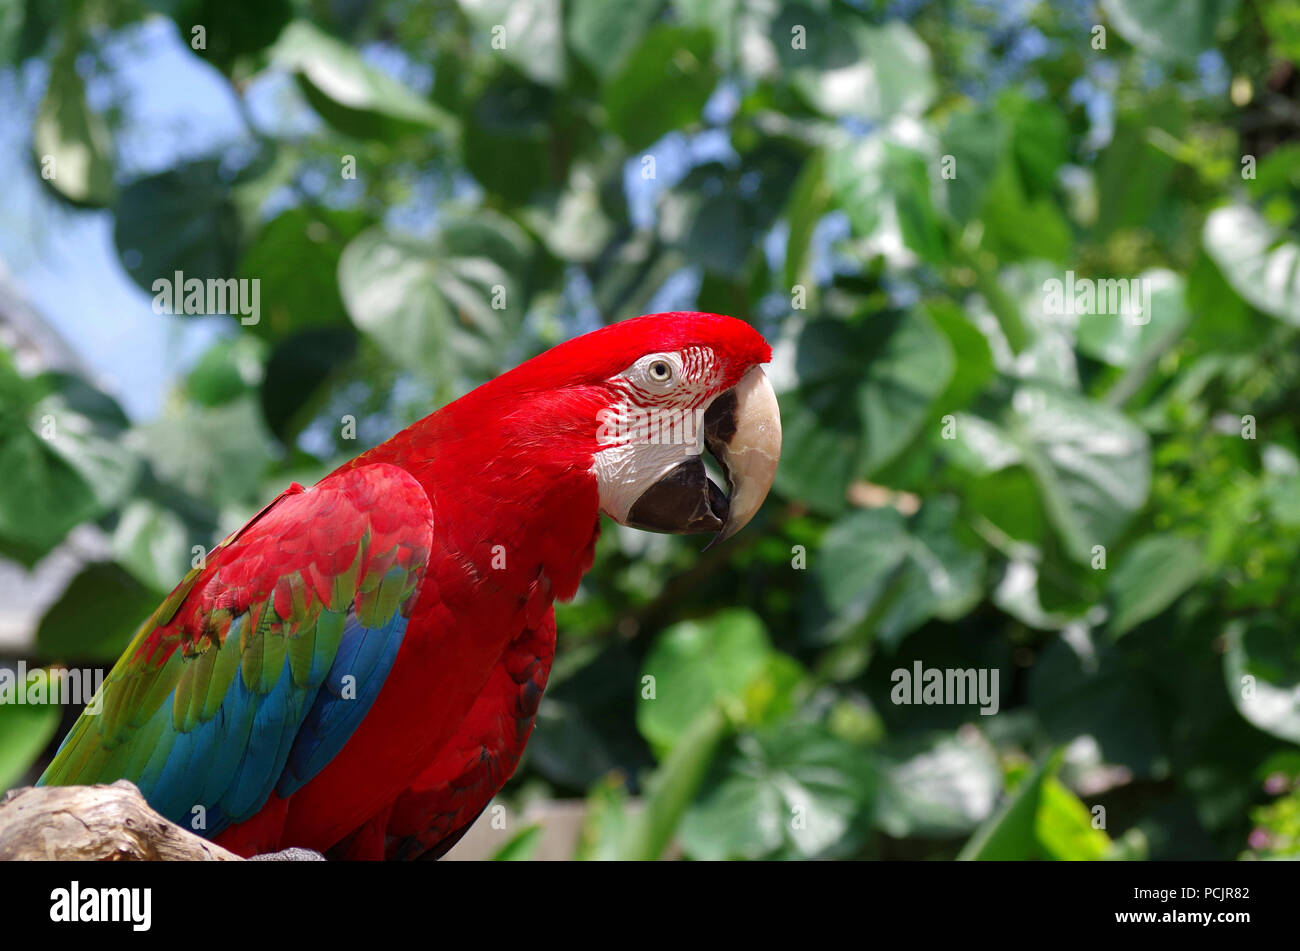 Green-Winged Ara. "Papagei Sprechen" Programm an der South Texas Botanischen Gärten und Natur Center in Corpus Christi, Texas USA. Stockfoto